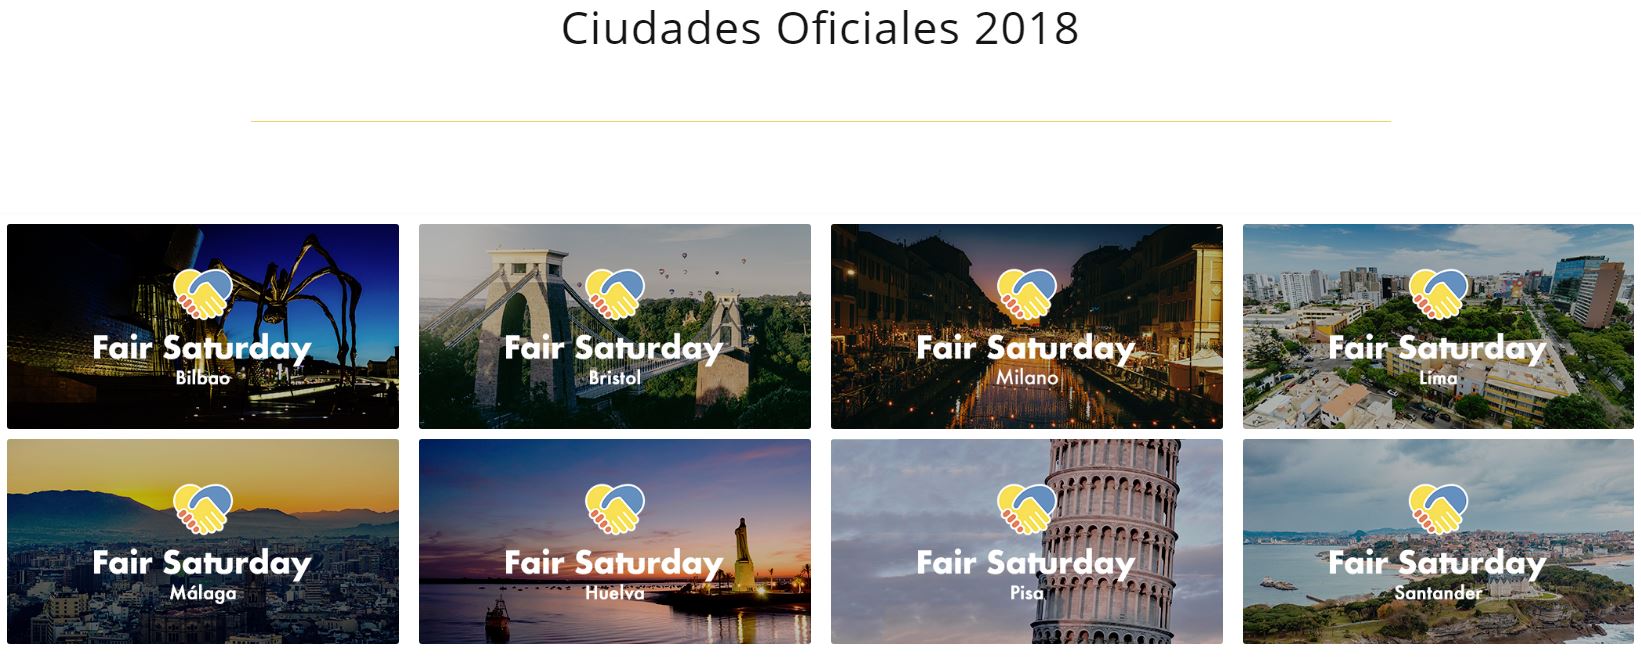 ciudades-Fair-Saturday-2018